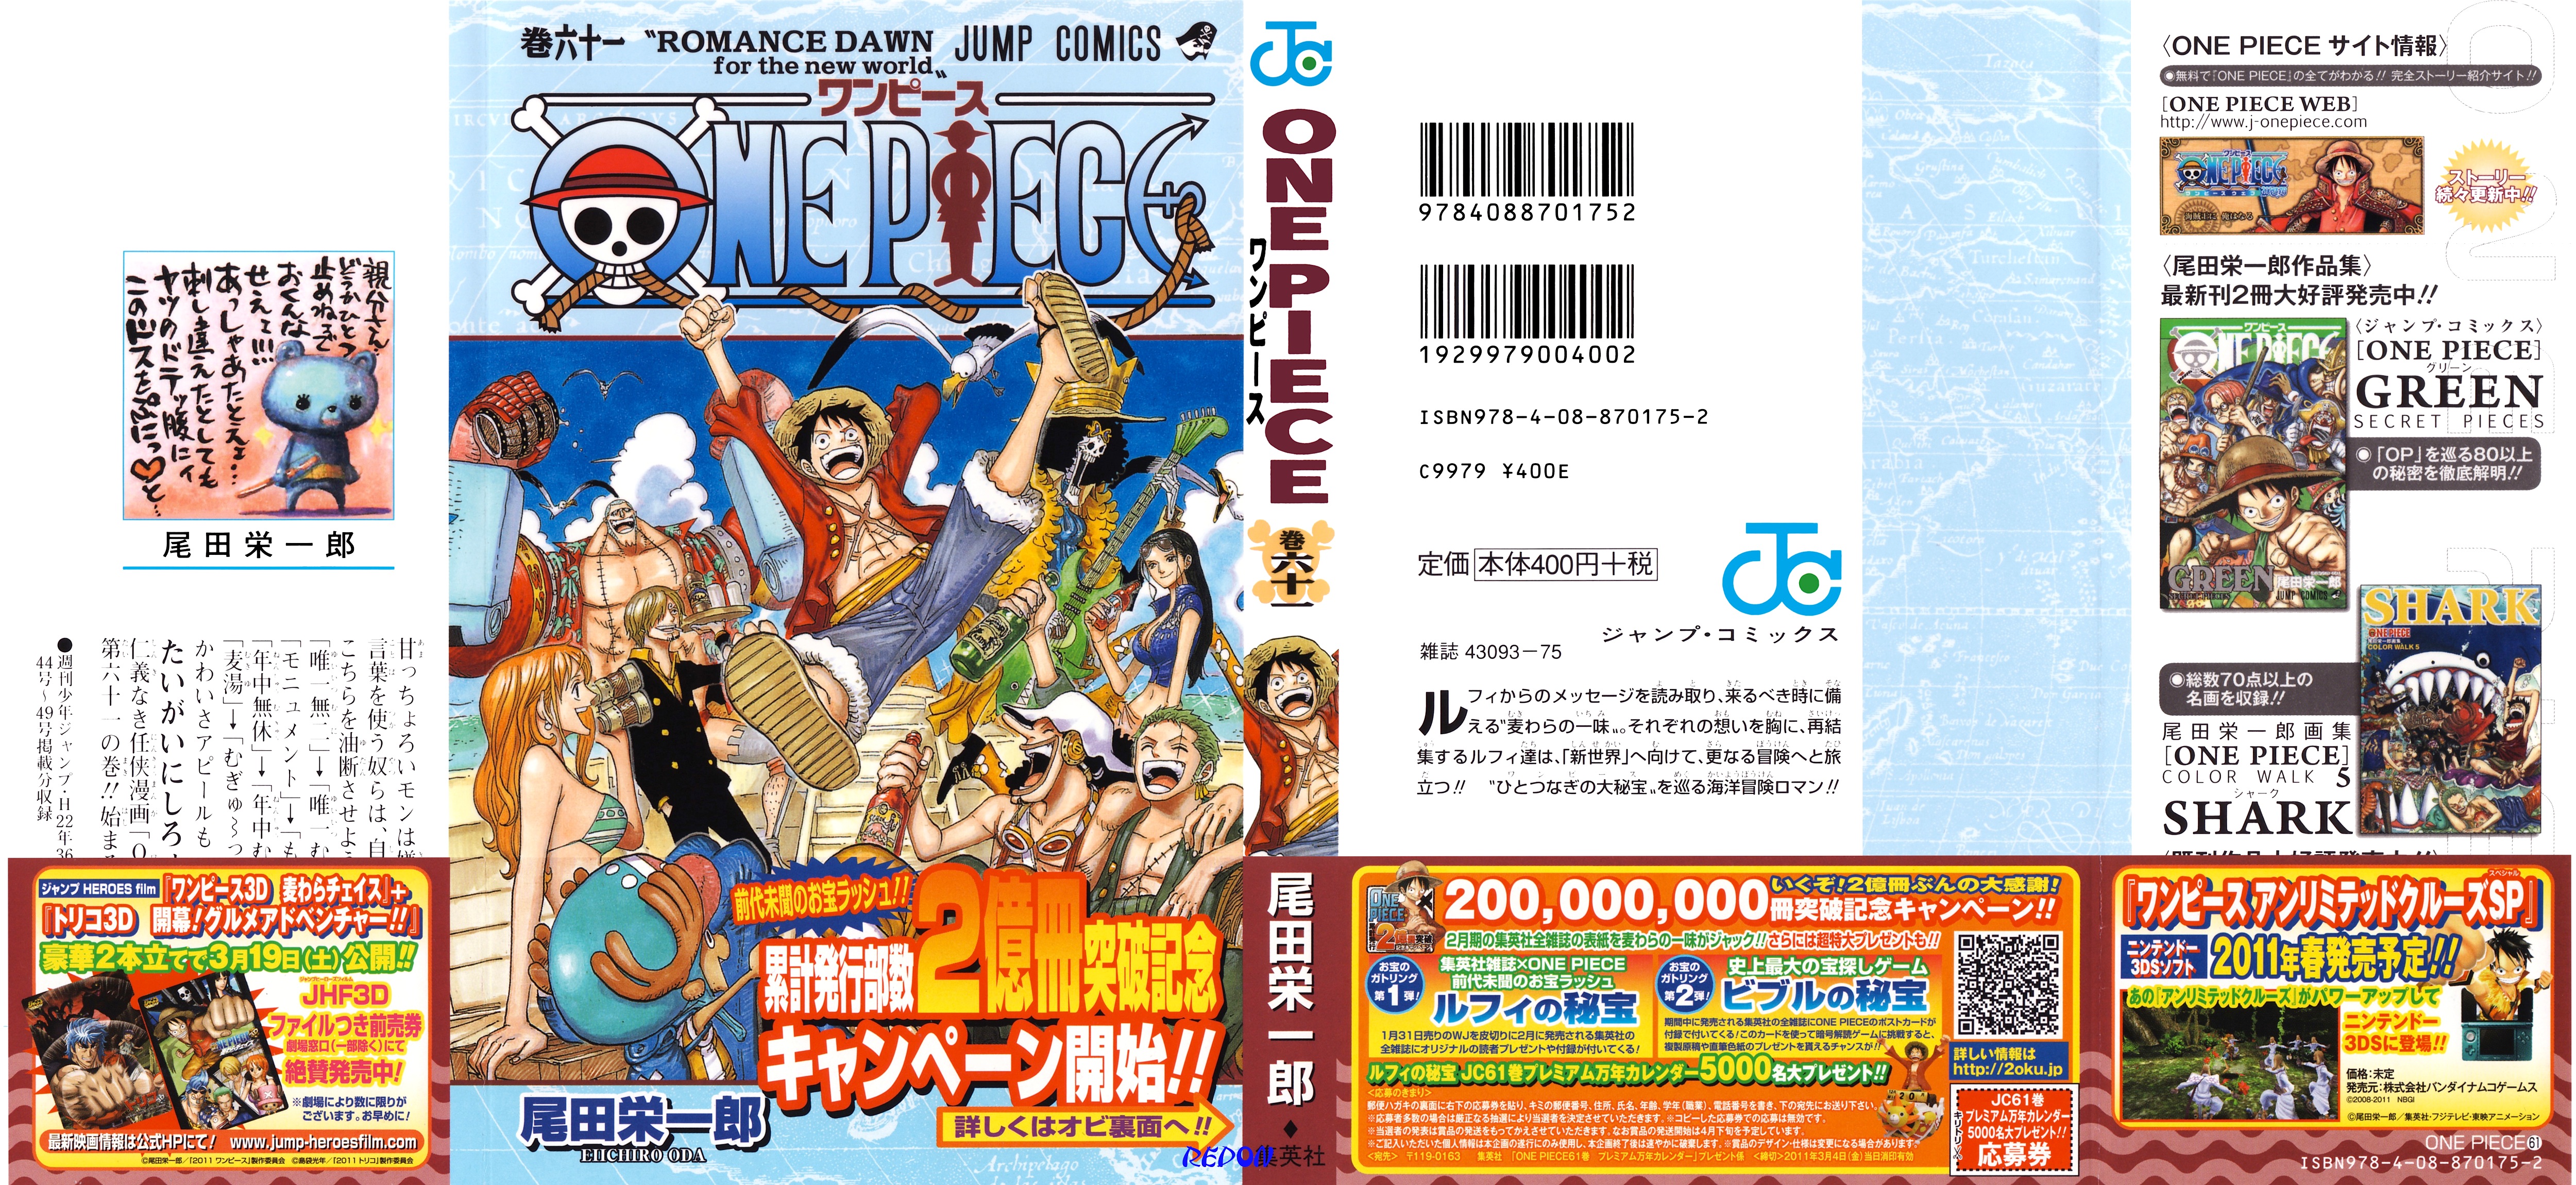 One Piece Vol 61 cover copia